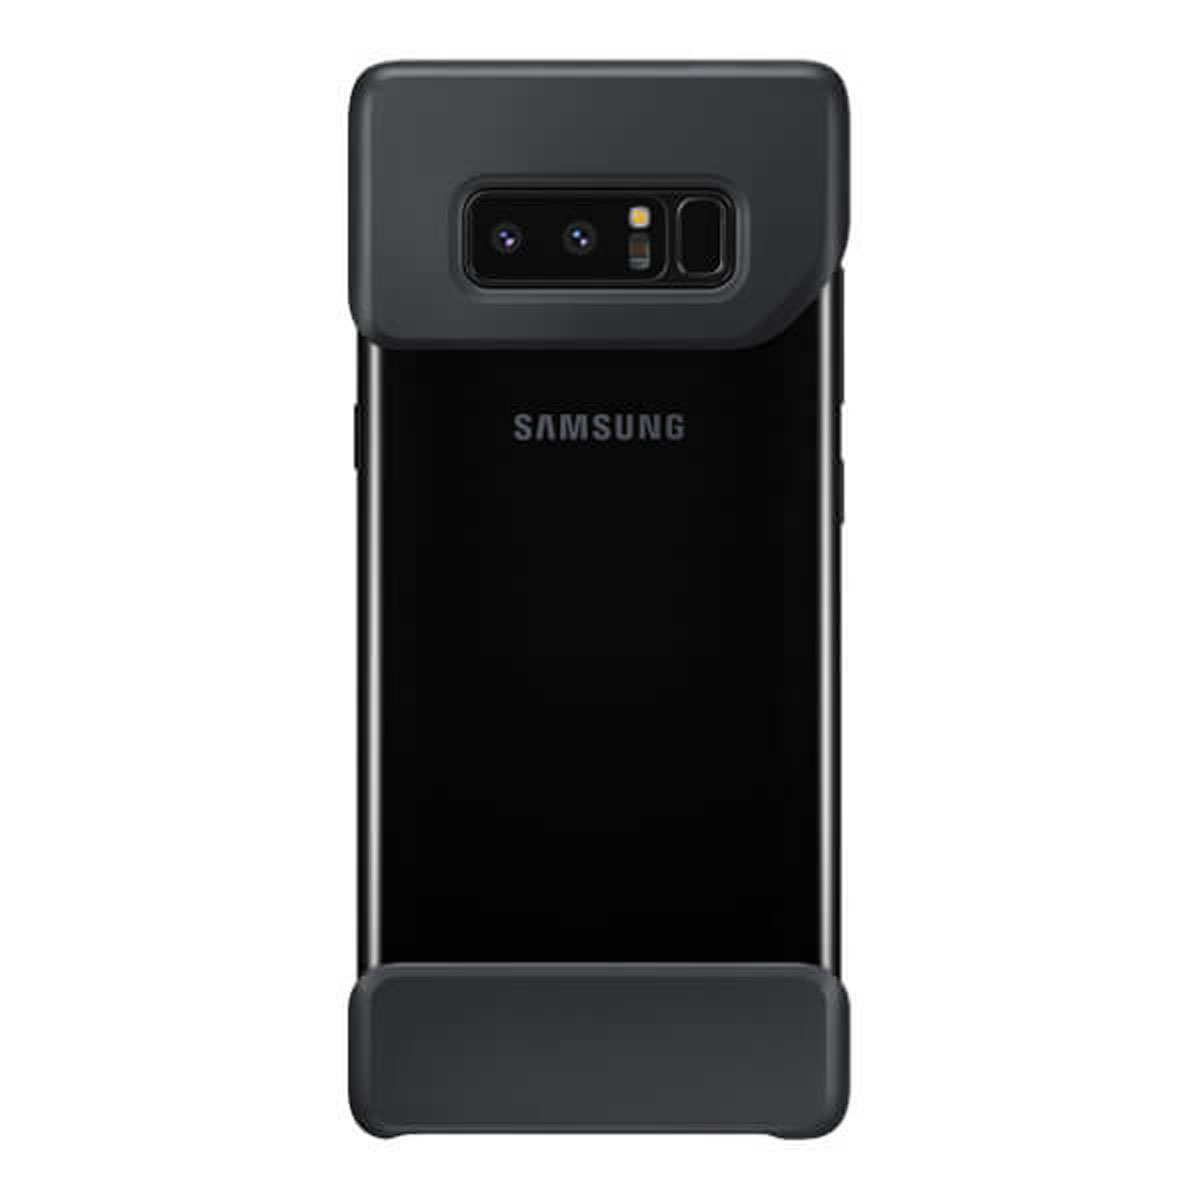 GENERICA Galaxy Note 8 2 Galaxy Schwarz - 8, Cover Schwarz, Reisekoffer, Piece Note Samsung